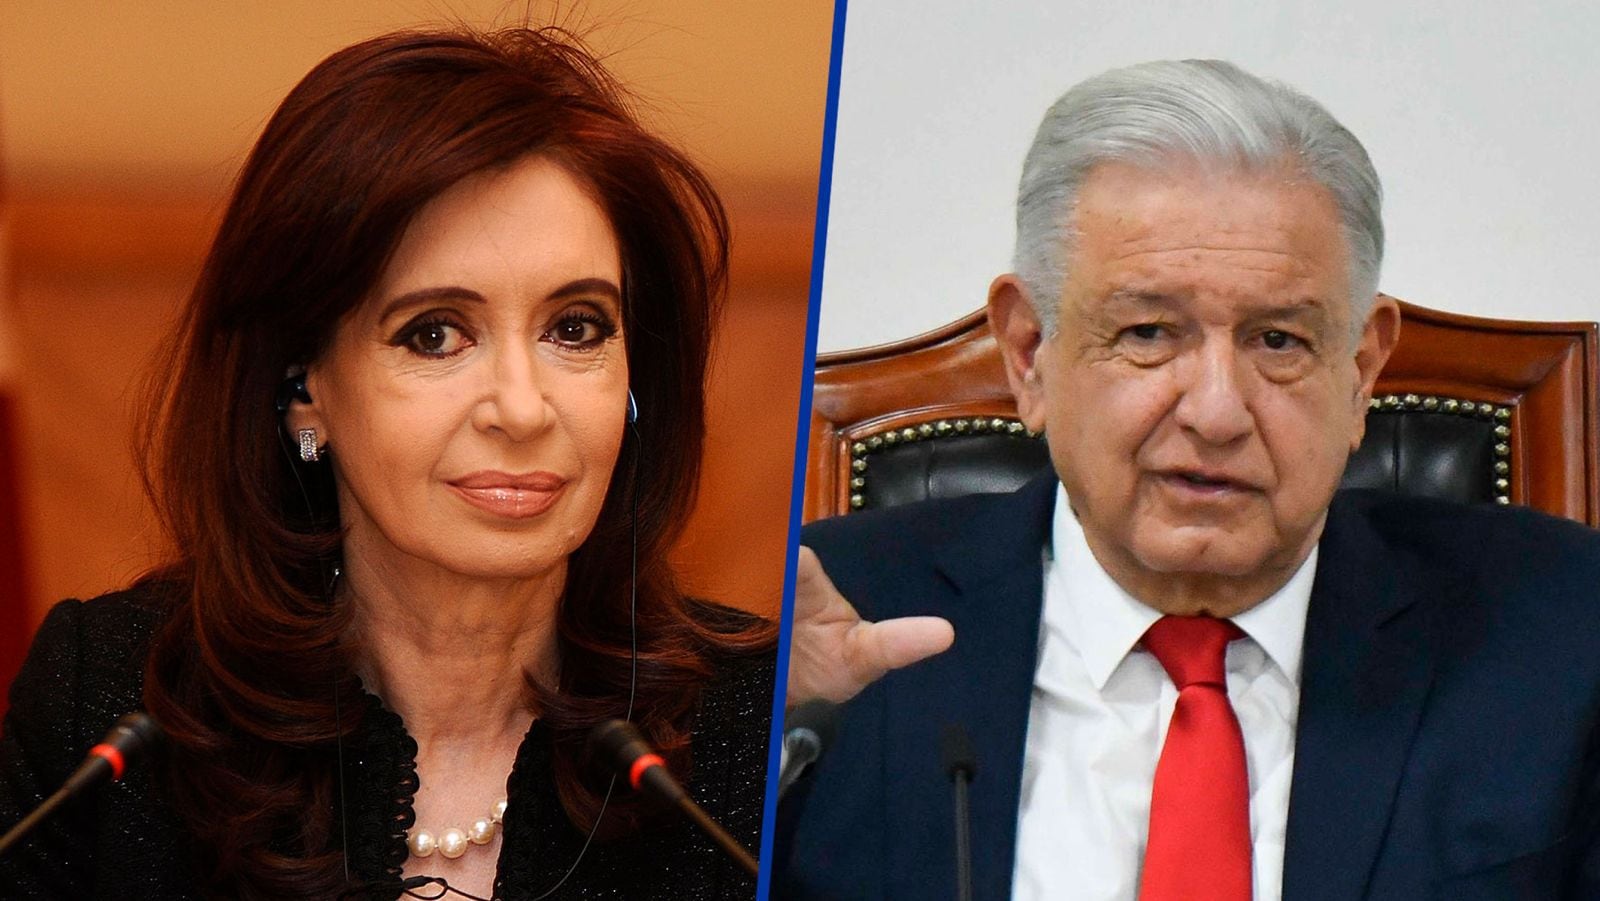 Fernández de Kirchner aplaude reforma judicial de López Obrador